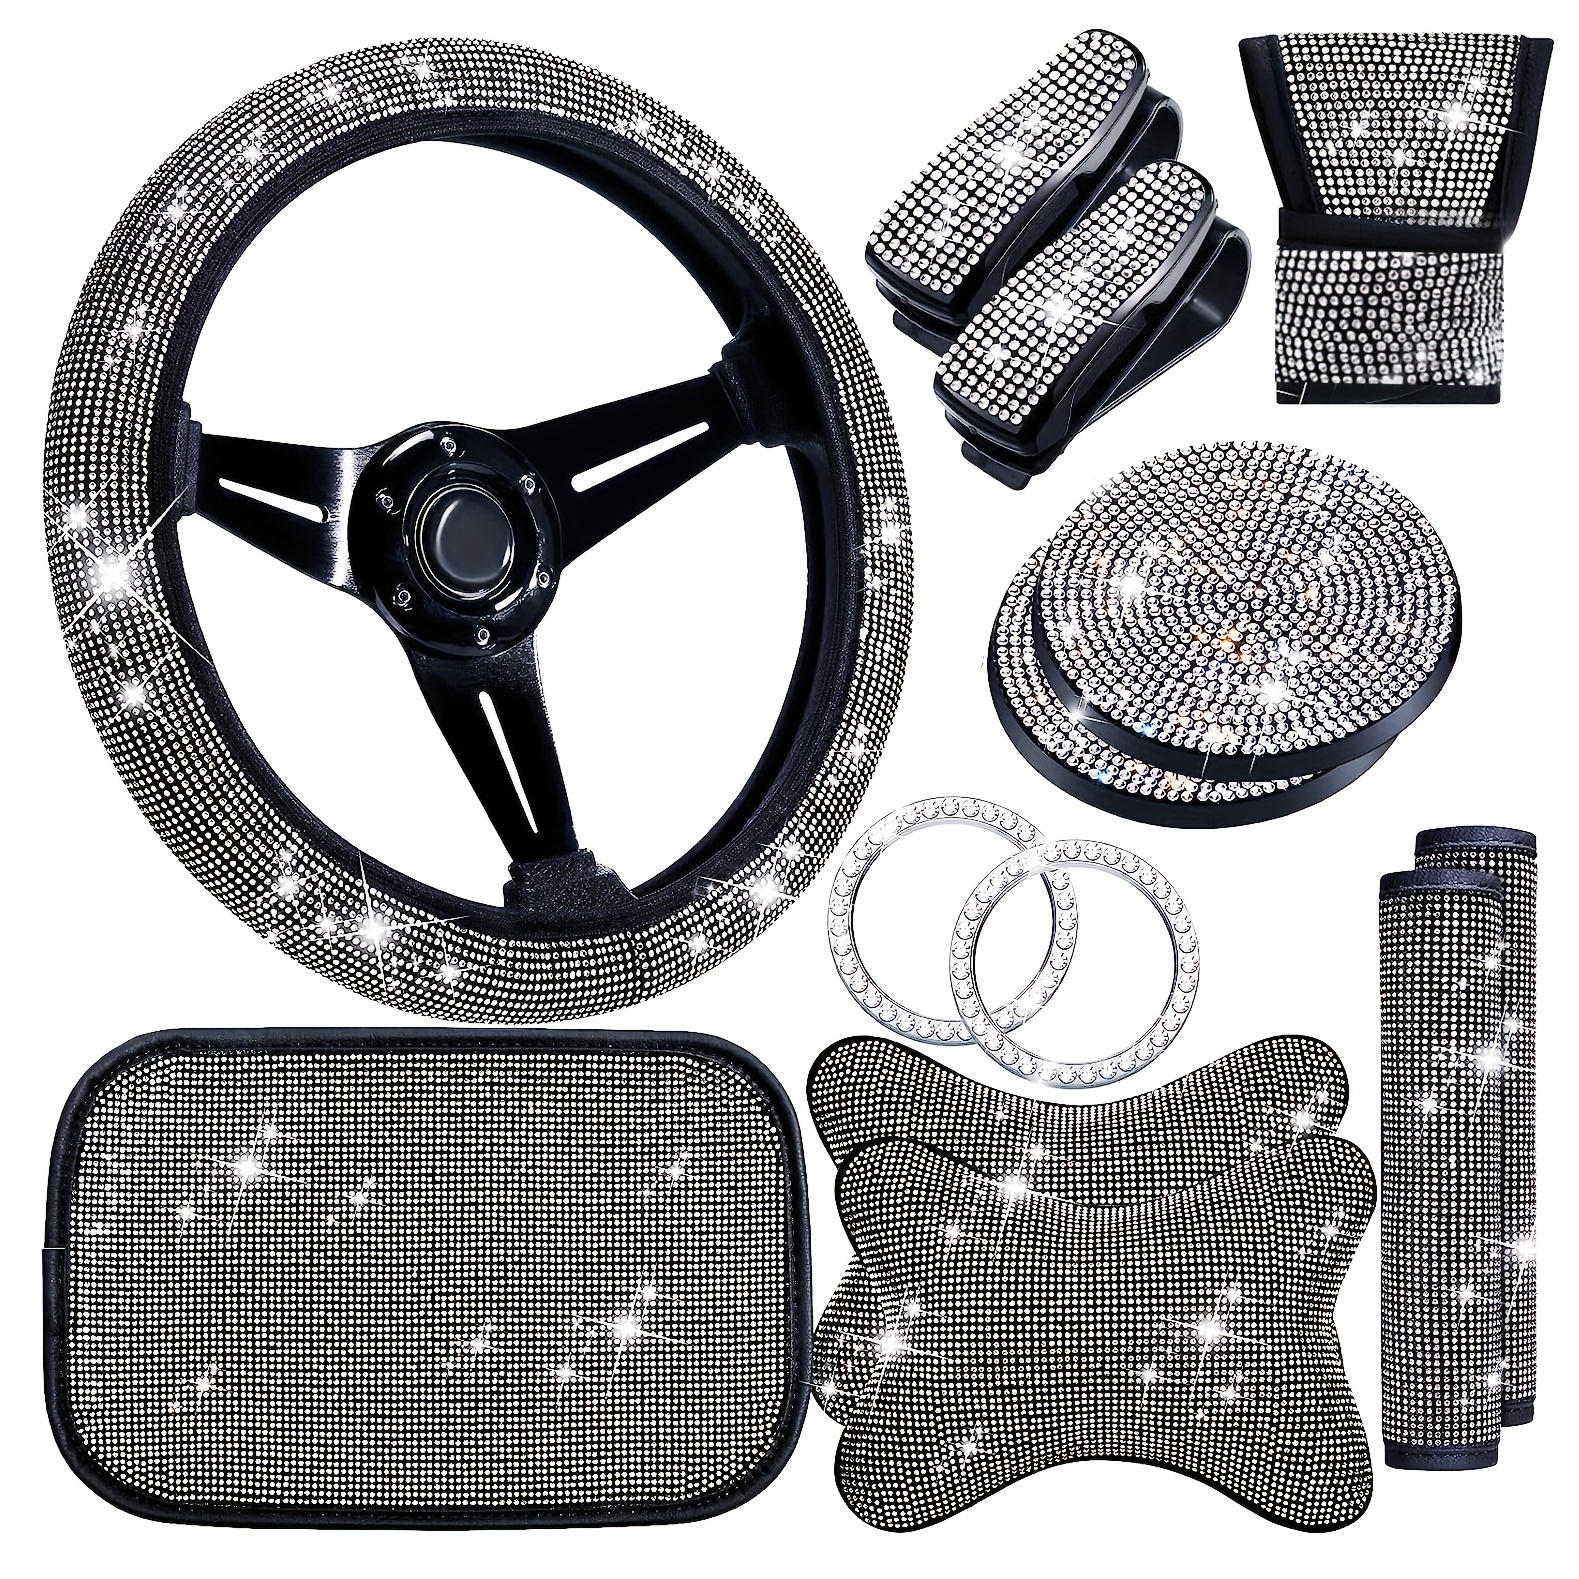 Interior de coche ostentoso,Conjunto de accesorios para coche con diamantes  de imitación brillantes para mujeres y niñas,Auto Interior Accesorios